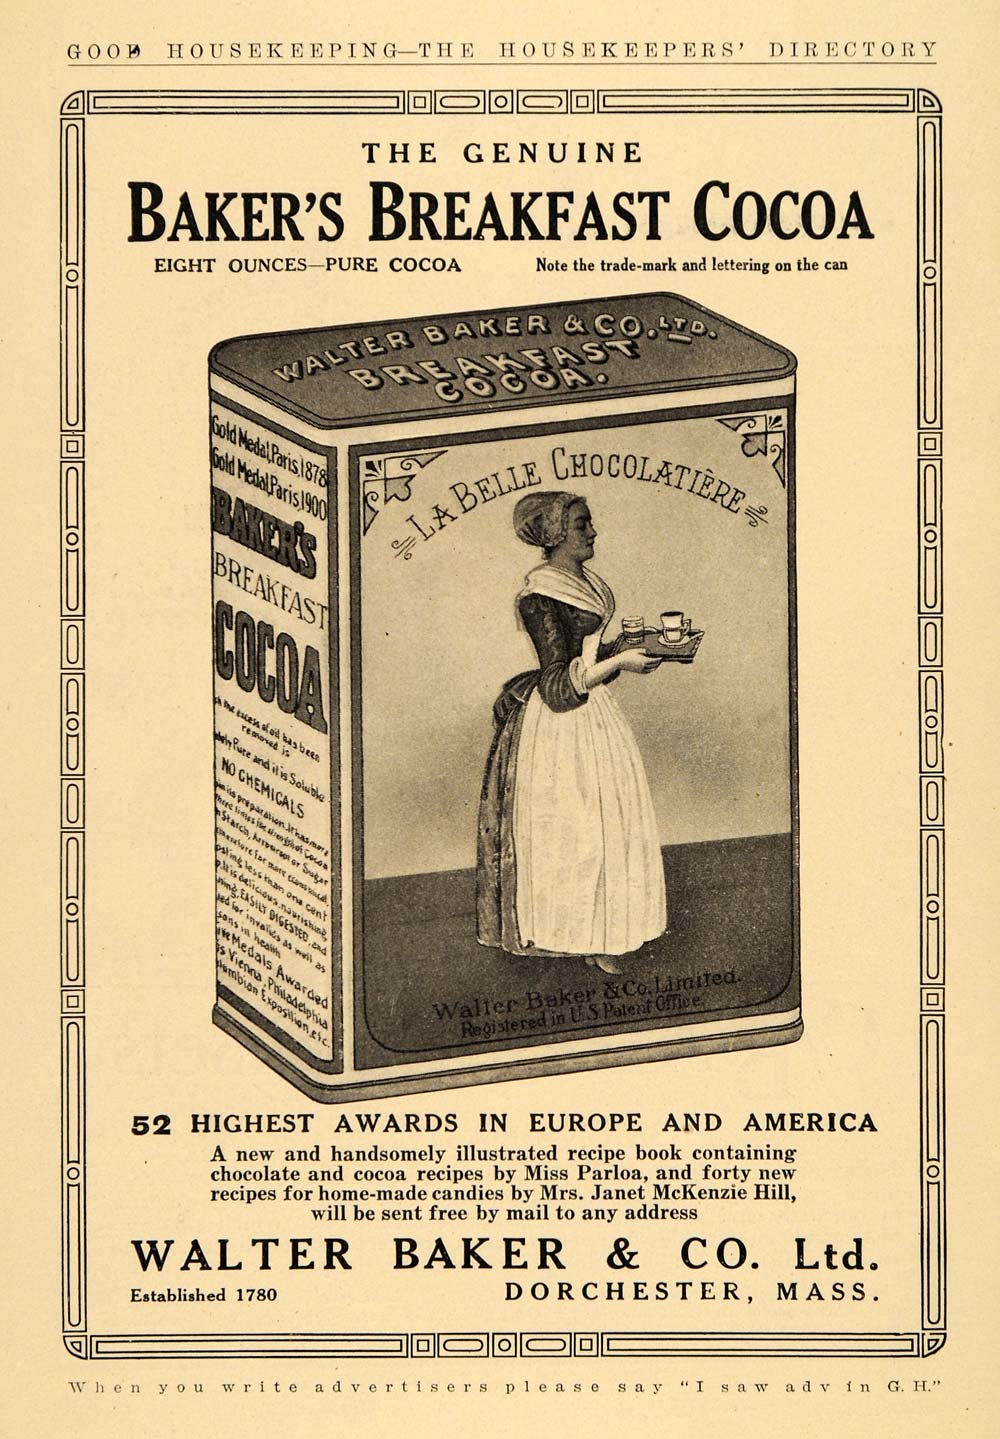 1909 Ad Walter Baker & Co. Ltd. Breakfast Cocoa Drink - ORIGINAL ADVERTISING GH3